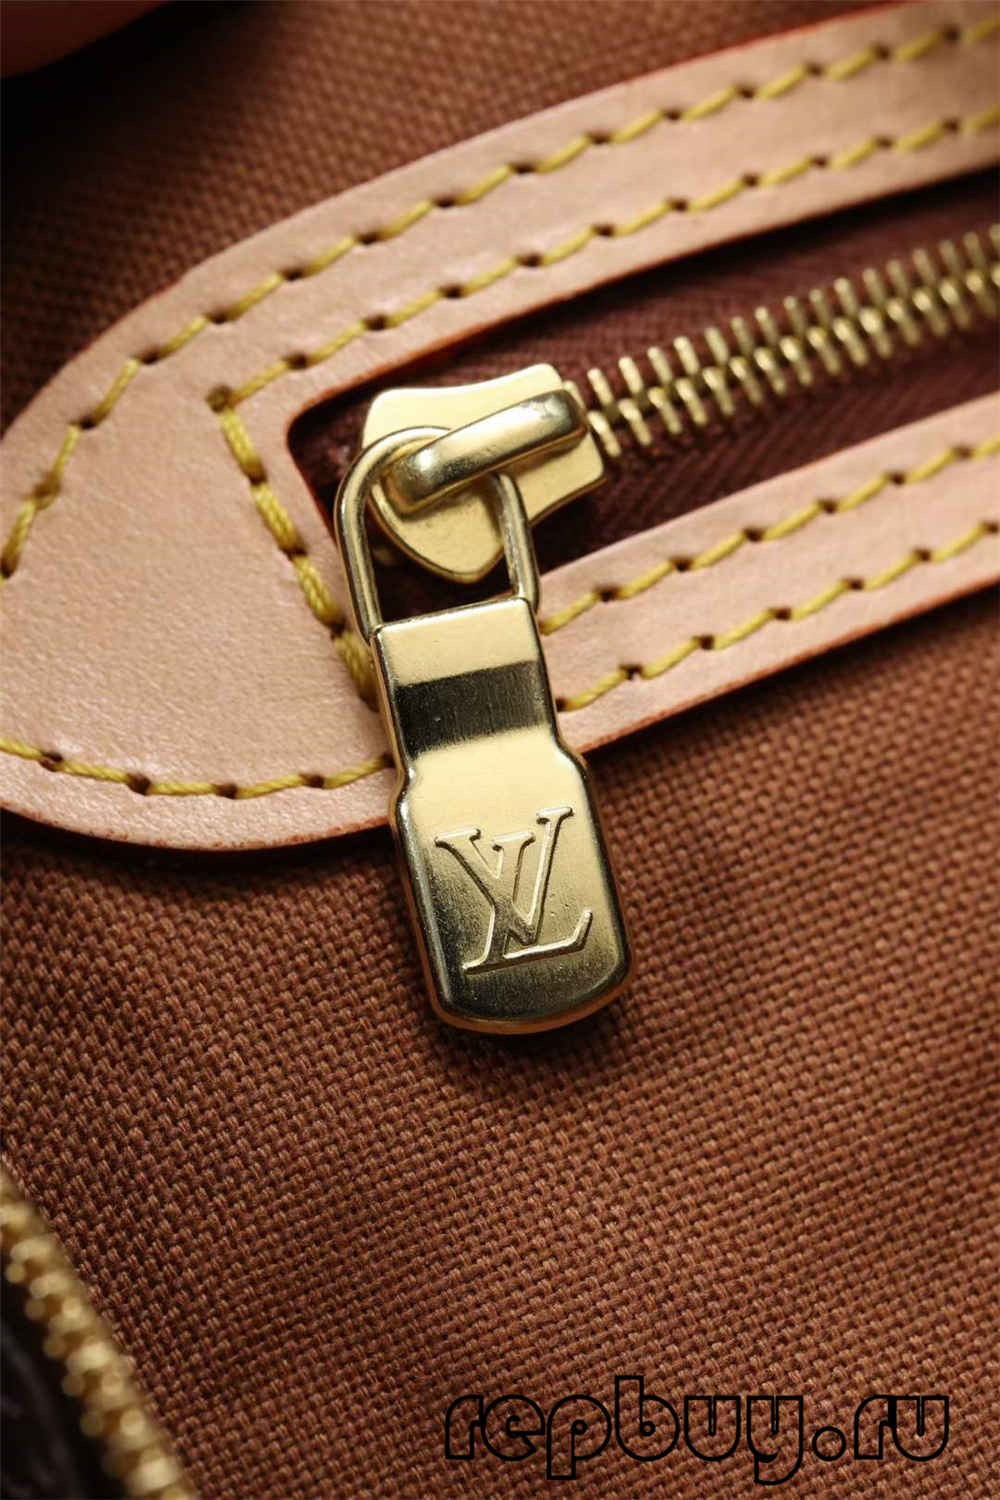 အရည်အသွေးအကောင်းဆုံး Louis Vuitton Speedy 25 အိတ်ပုံစံတူ အွန်လိုင်းစျေးဝယ် (2022 အပ်ဒိတ်လုပ်ထားသည်)-အရည်အသွေးအကောင်းဆုံးအတု Louis Vuitton Bag အွန်လိုင်းစတိုး၊ ပုံစံတူဒီဇိုင်နာအိတ် ru